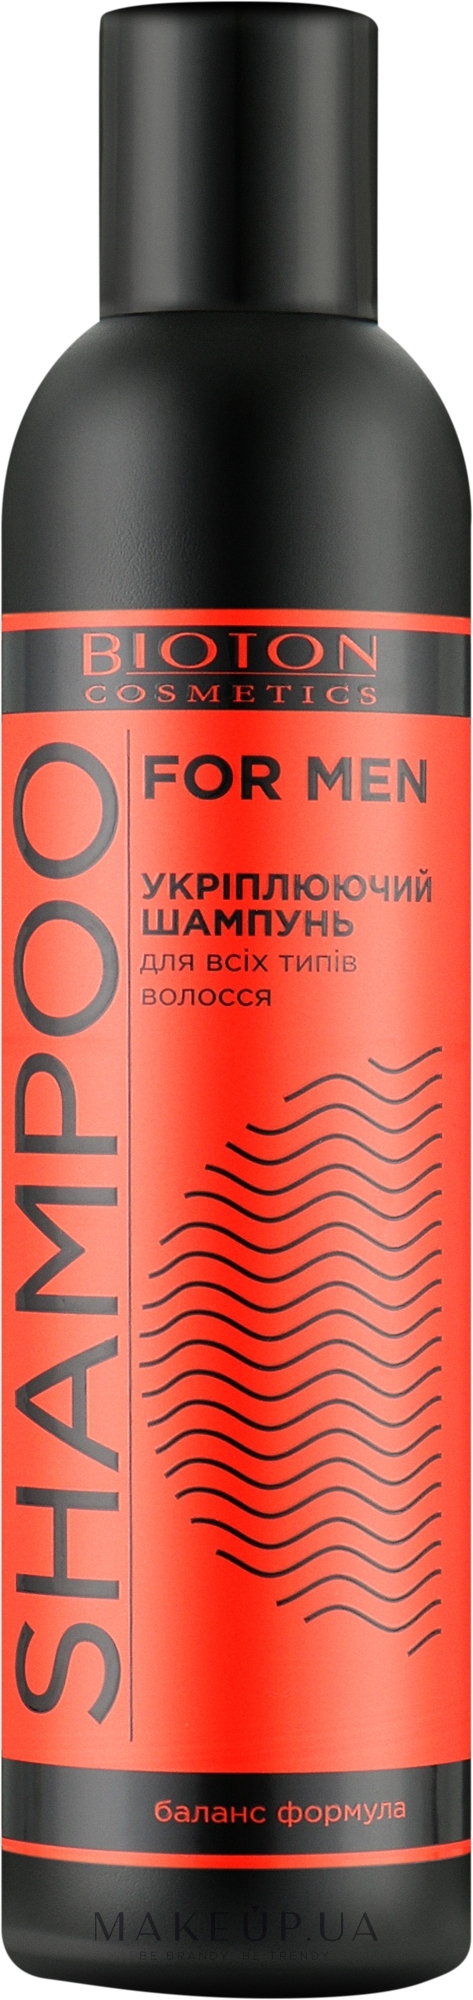 Ультраживильний шампунь для всіх типів волосся - Bioton Cosmetics Shampoo For Men — фото 250ml